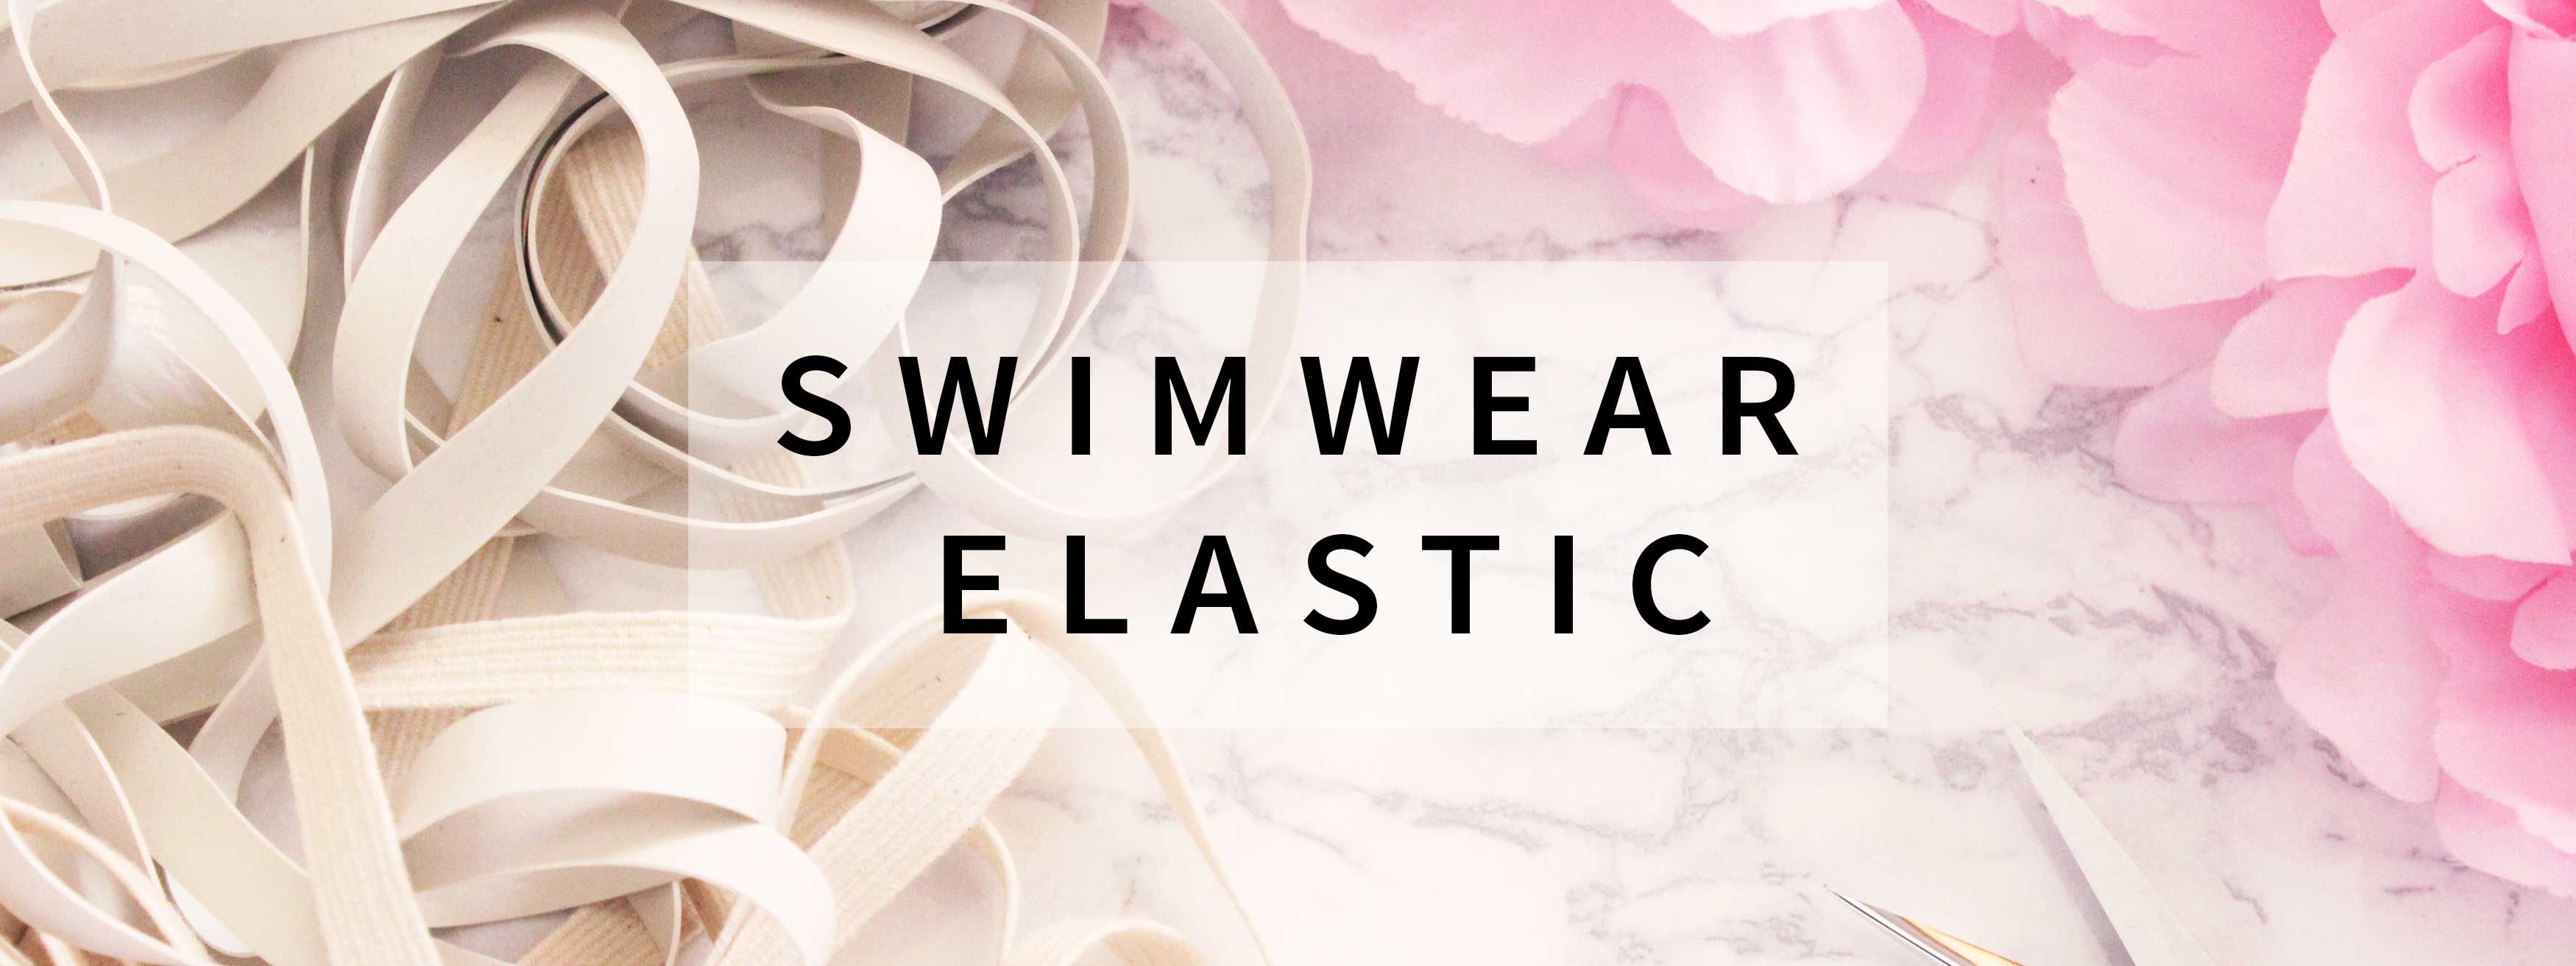 Where to buy Swimwear Fabrics & Supplies Sewing Your Own Swimwear